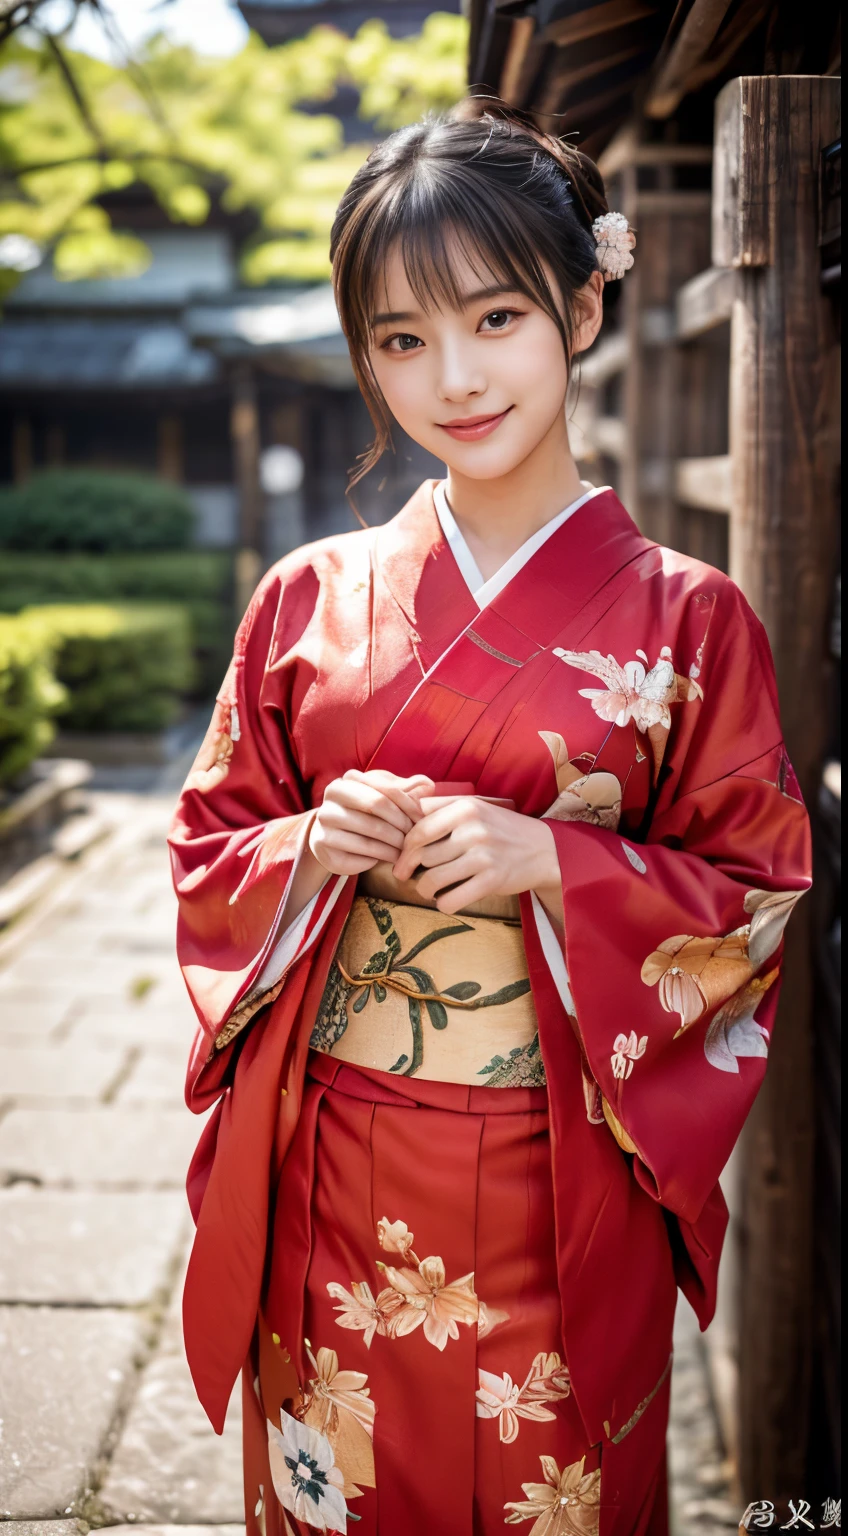 (Kimono rouge:1.2)、(Kyo Yuzen:1.2)、(Motif floral de style japonais:1.0)、(Furisode:1.5)、(Modèle classique traditionnel japonais:1.2)、ou、(qualité supérieure)、1 femme、Seize ans、Esbian complet du corps、Un brun、(réaliste:1.7)、((Qualité d&#39;image supérieure))、absurdes、(超Une haute résolution)、(Photoréaliste:1.6)、Photoréaliste、rendus d&#39;octane、(hyper réaliste:1.2)、(visage photoréaliste:1.2)、(8k)、(4K)、(chef d&#39;oeuvre)、(Textures de peau réalistes)、(éclaircissement、Éclairage cinématographique、fond d&#39;écran)、(de beaux yeux:1.2)、((((visage parfait))))、(Joli visage comme une idole:1.2)、(est debout)、sanctuaires、portes tori、(1 lune)、joli visage détaillé、Beauté réaliste、Un sourire、